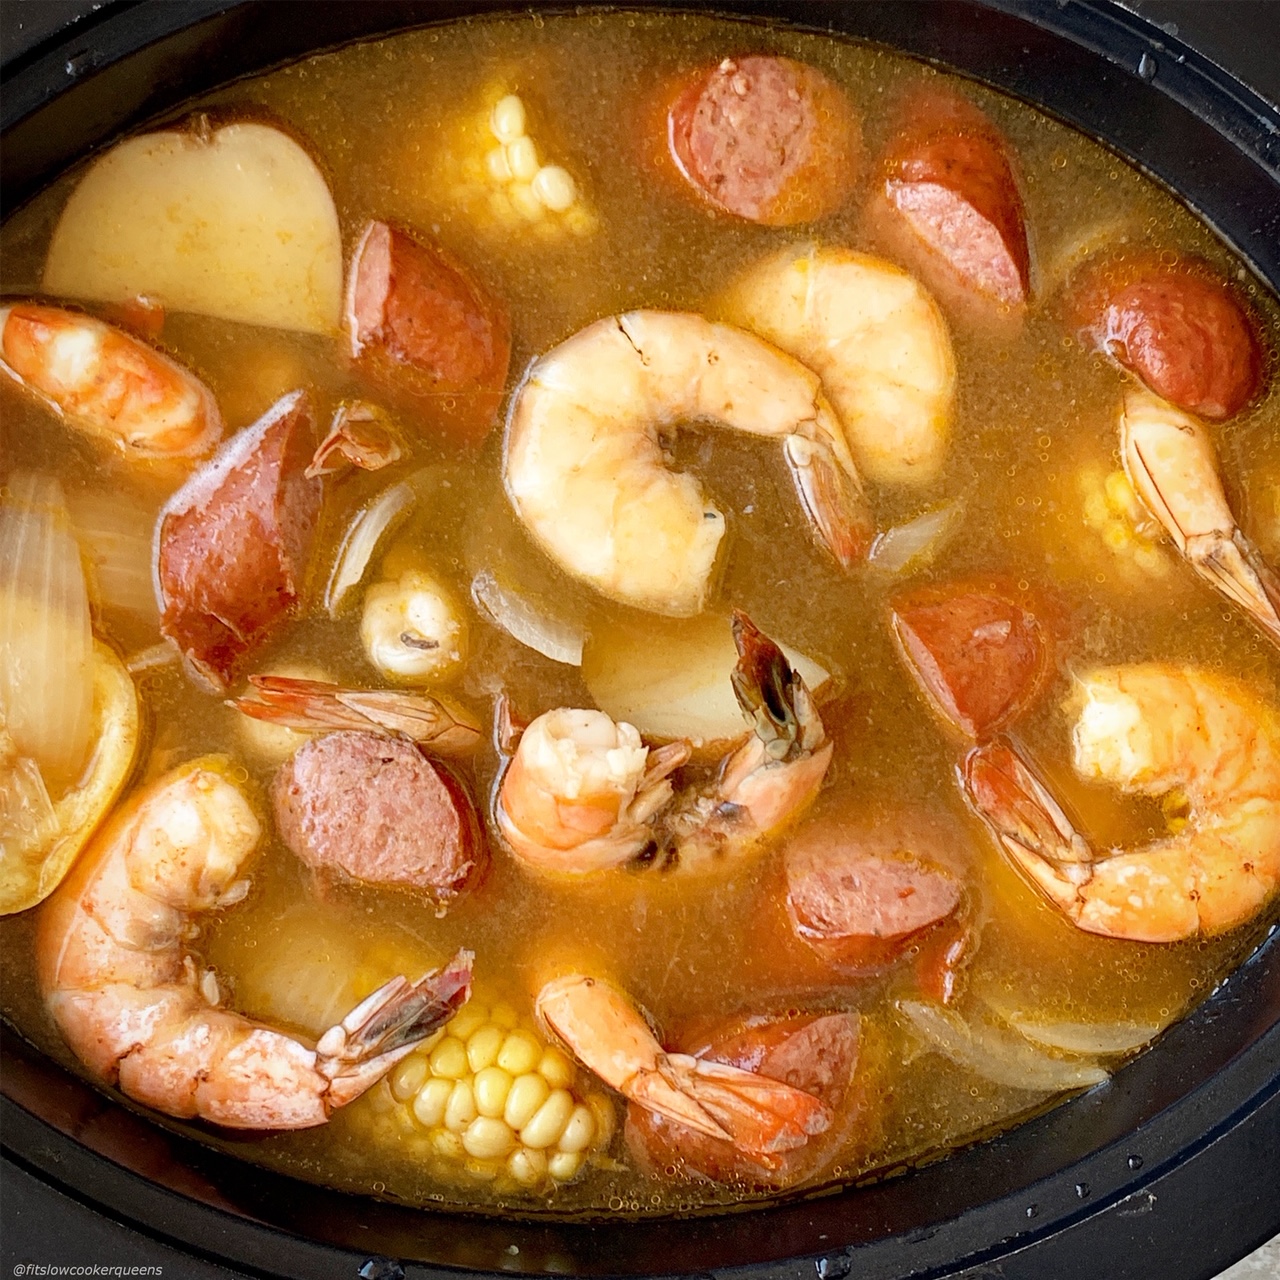 Crockpot Slow Cooker Shrimp Boil - Zimmy's Nook